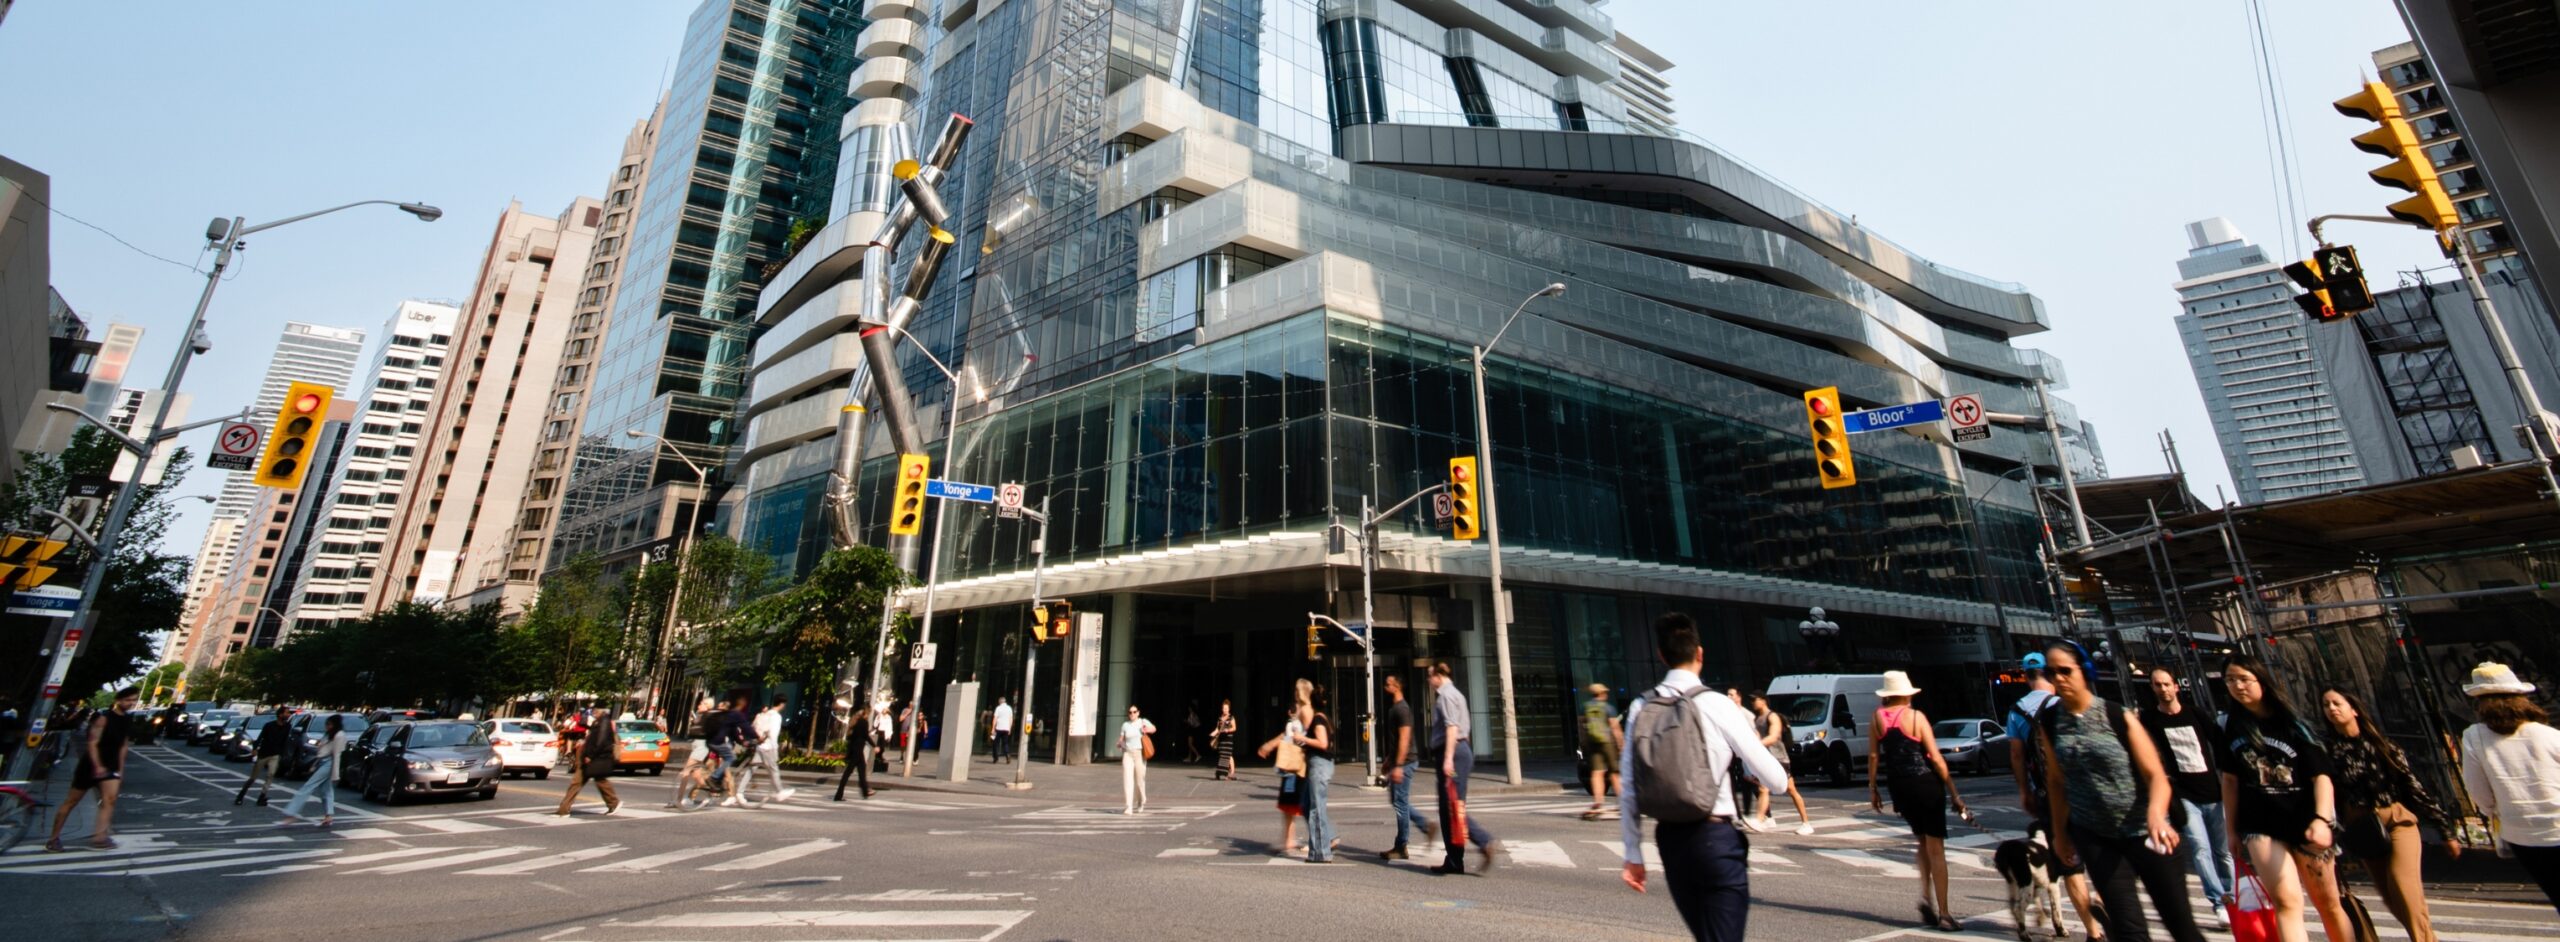 Bloor Street, Toronto, Ontario, Bloor Street is a major eas…